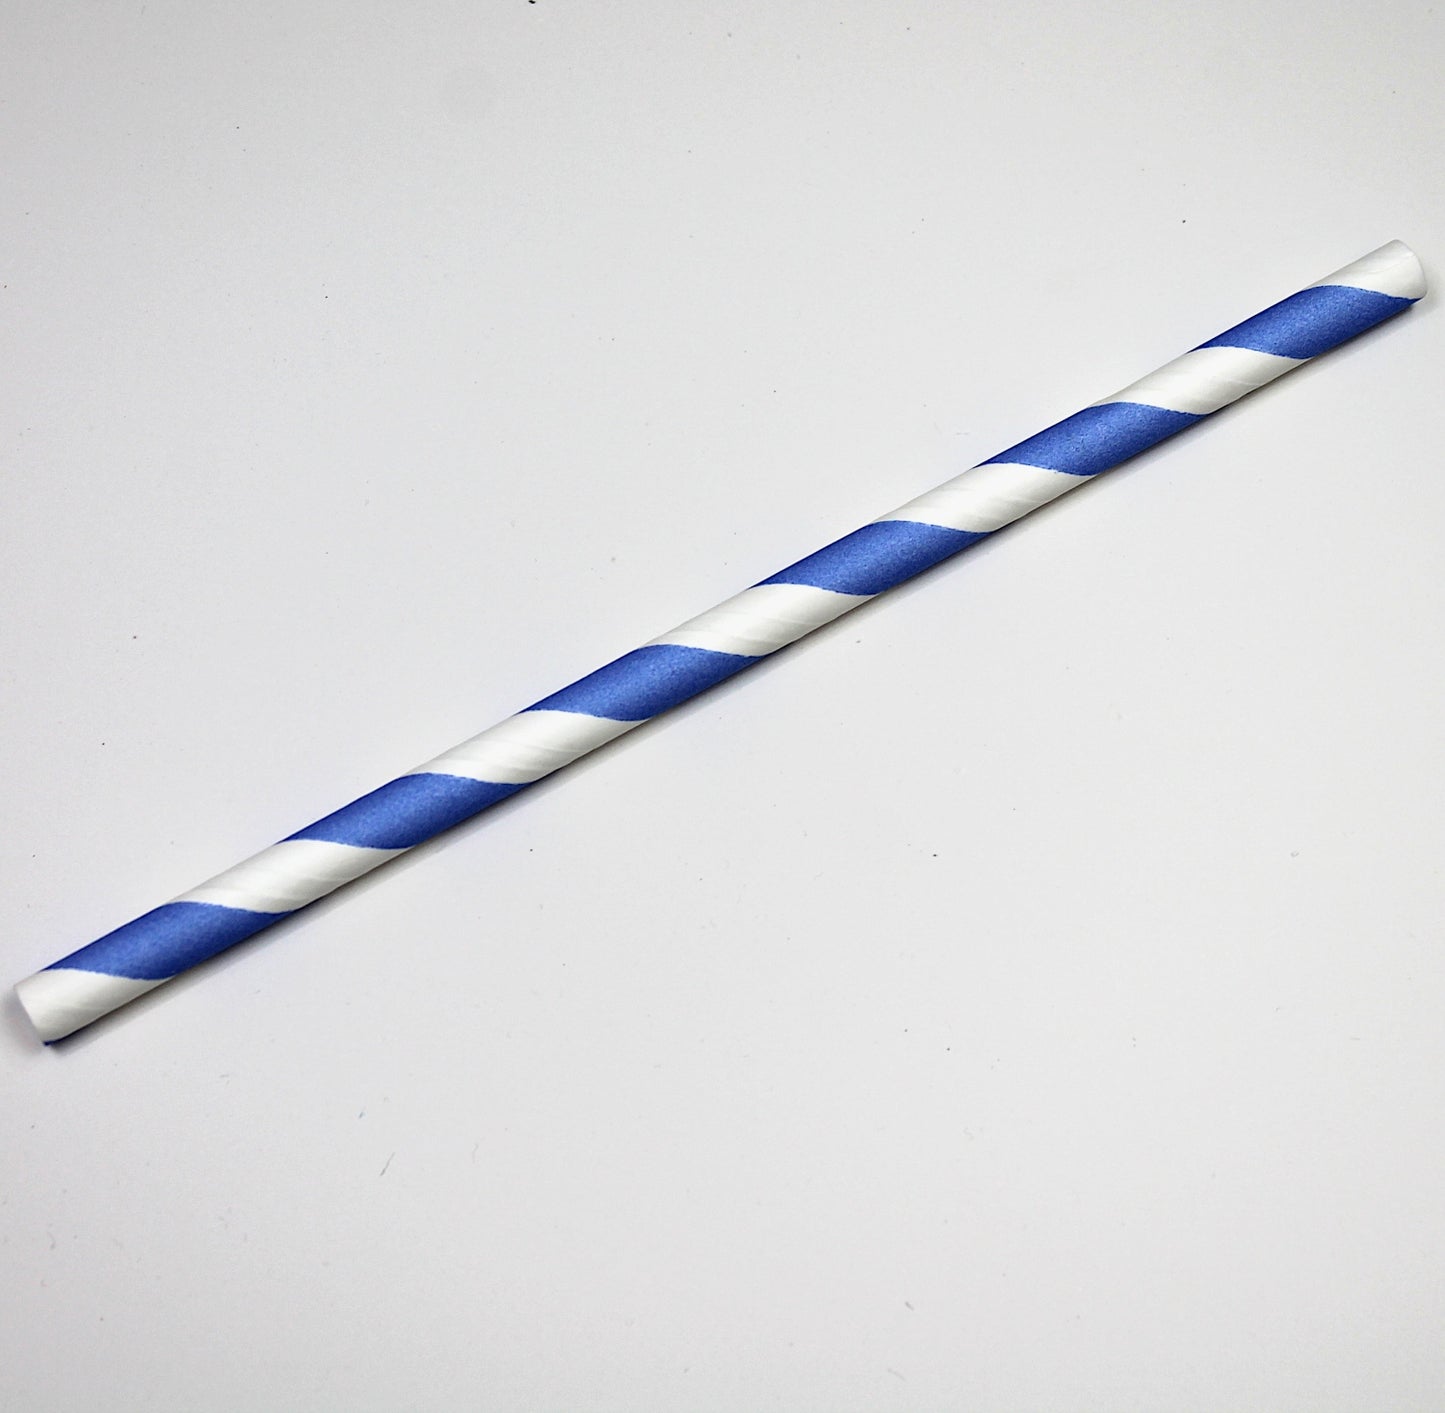 Blue Striped Paper Straws (8mm x 200mm)